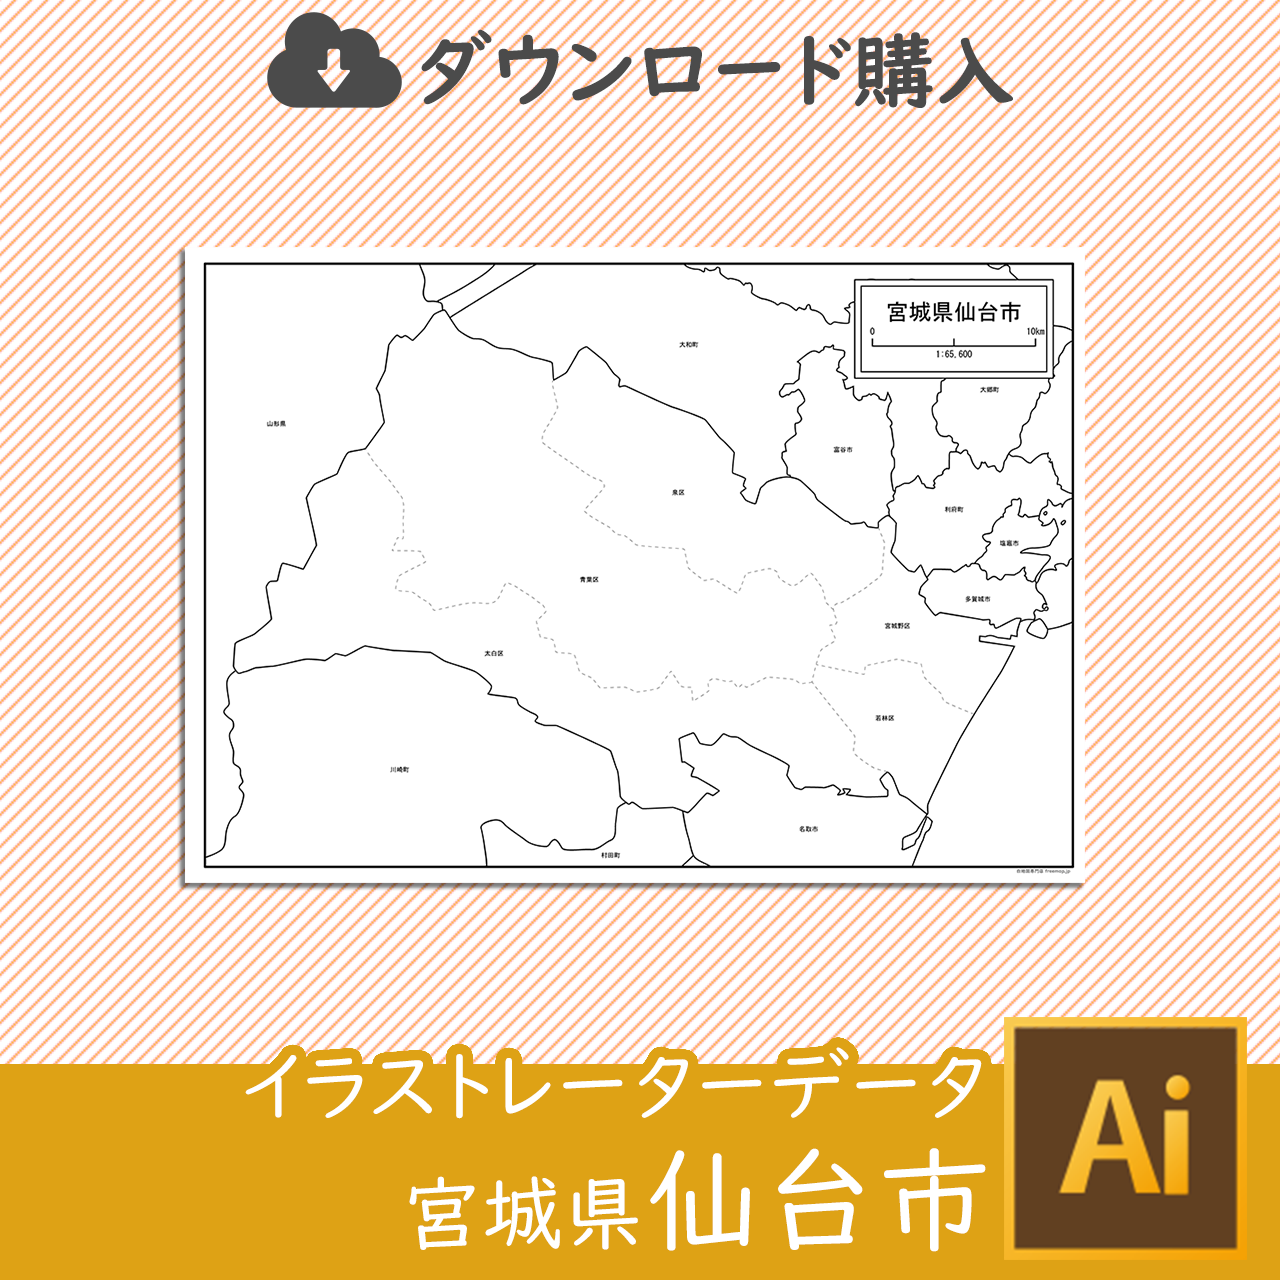 宮城県仙台市のサムネイル画像